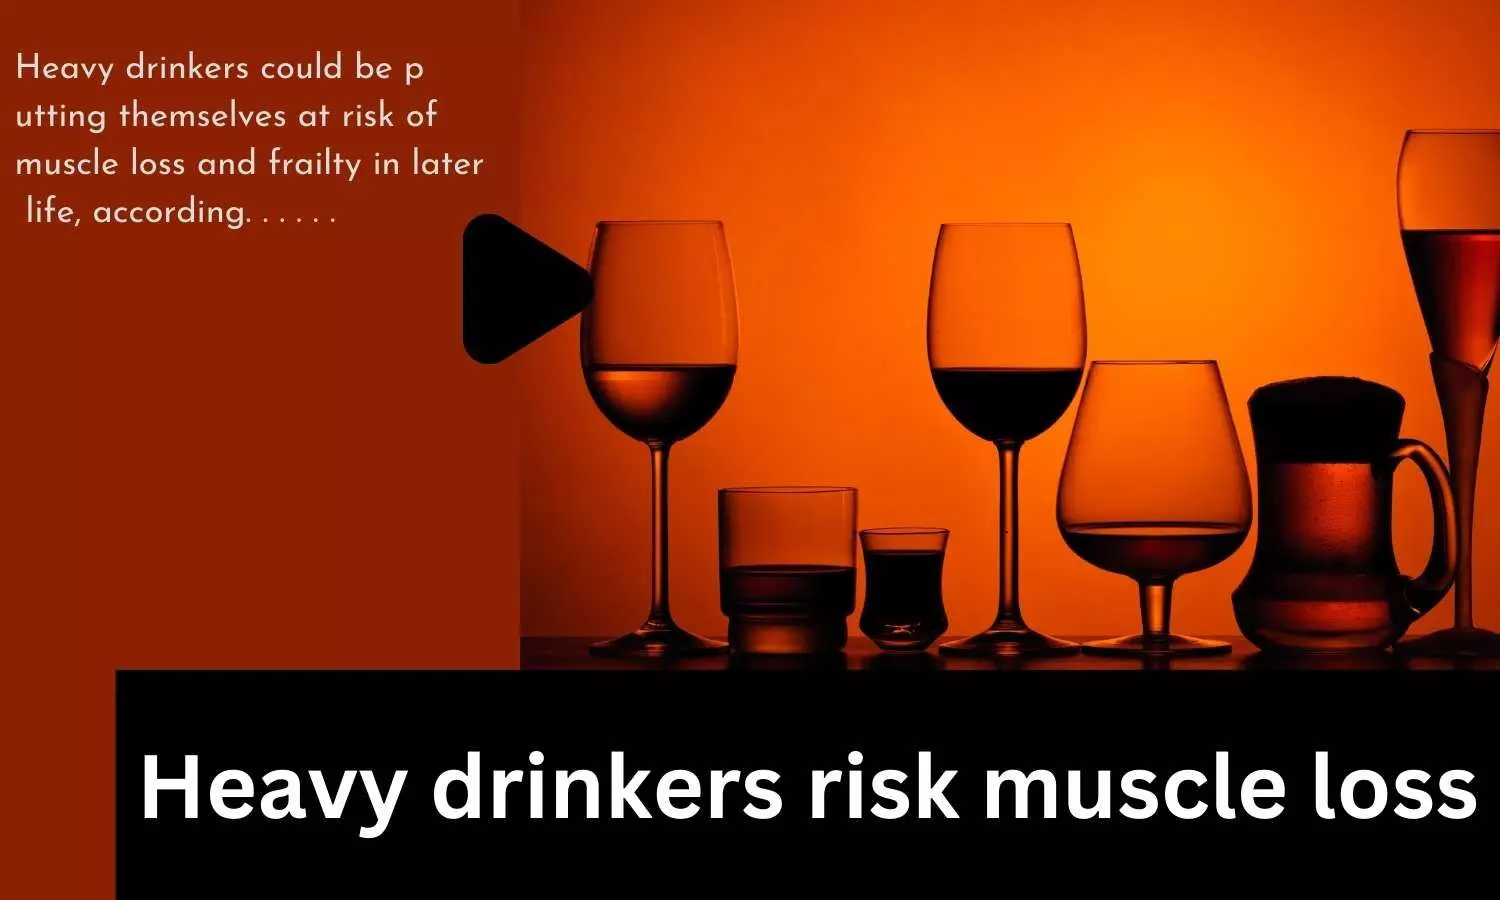 Heavy drinkers risk muscle loss